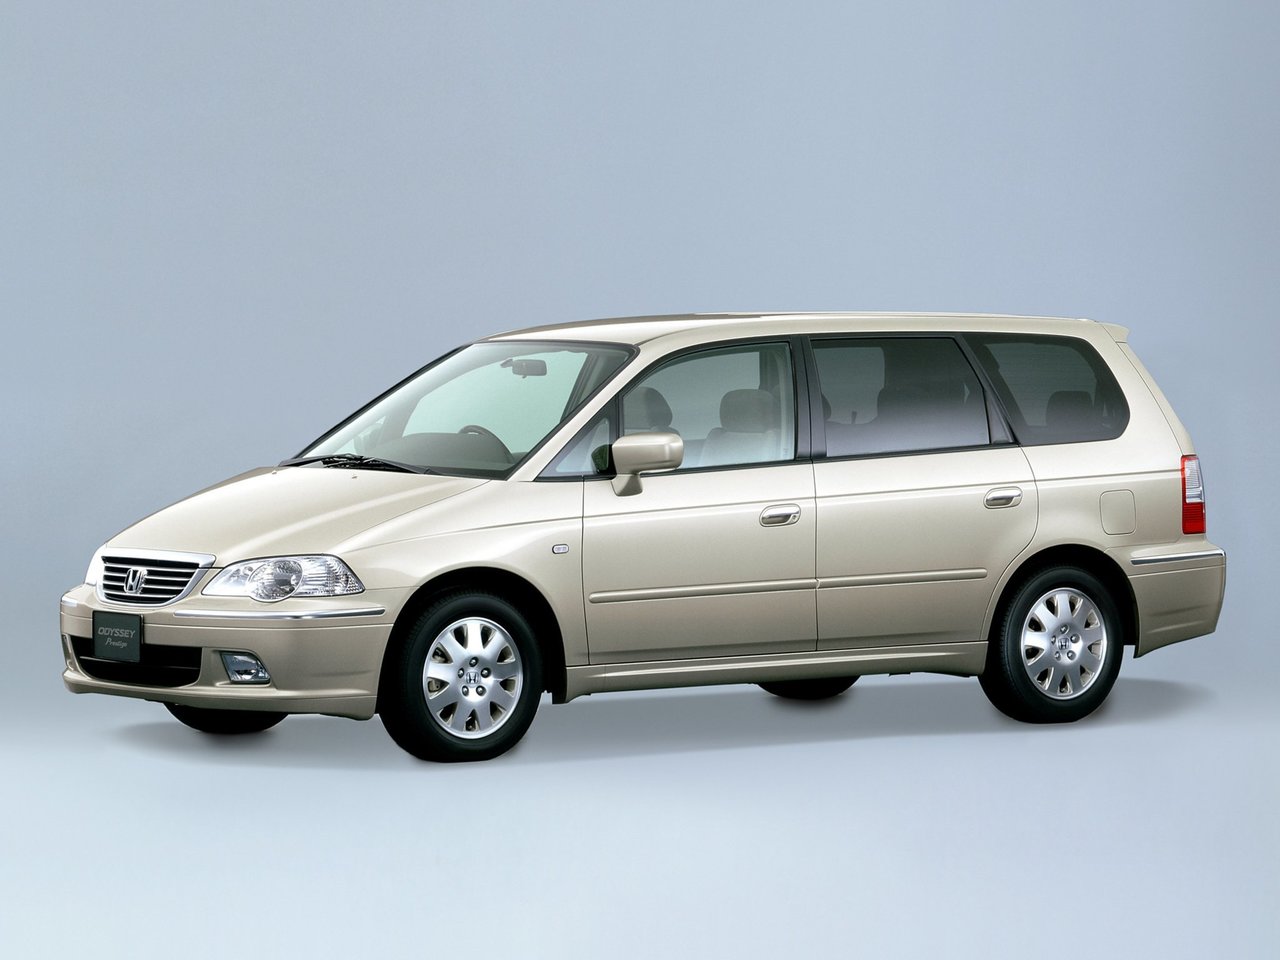 Расход газа пяти комплектаций компактвэна Honda Odyssey. Разница стоимости заправки газом и бензином. Автономный пробег до и после установки ГБО.